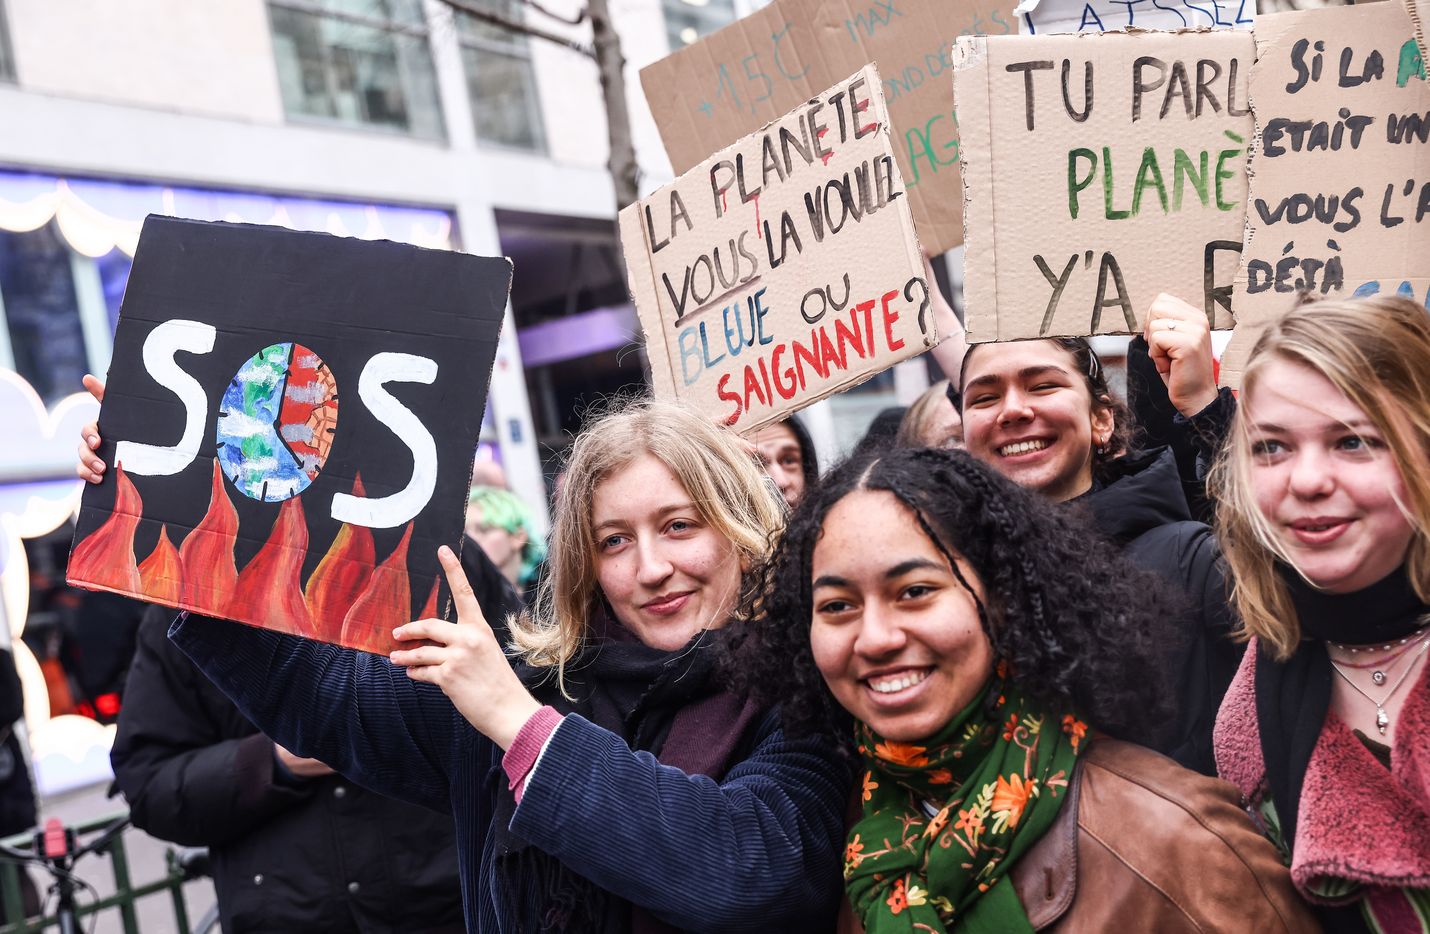 Ilmastokysymys on tulevaisuuden kannalta äärimmäisen tärkeä. Nuoret aktivistit pitelivät SOS-kylttejä Pariisissa 10. maaliskuuta, kun meneillään oli perjantait tulevaisuudelle -mielenosoitus maapallon lämpenemistä vastaan. Nuorisovetoinen toiminta sai alkunsa vuonna 2018 ja sillä vaaditaan ilmasto-oikeudenmukaisuutta.